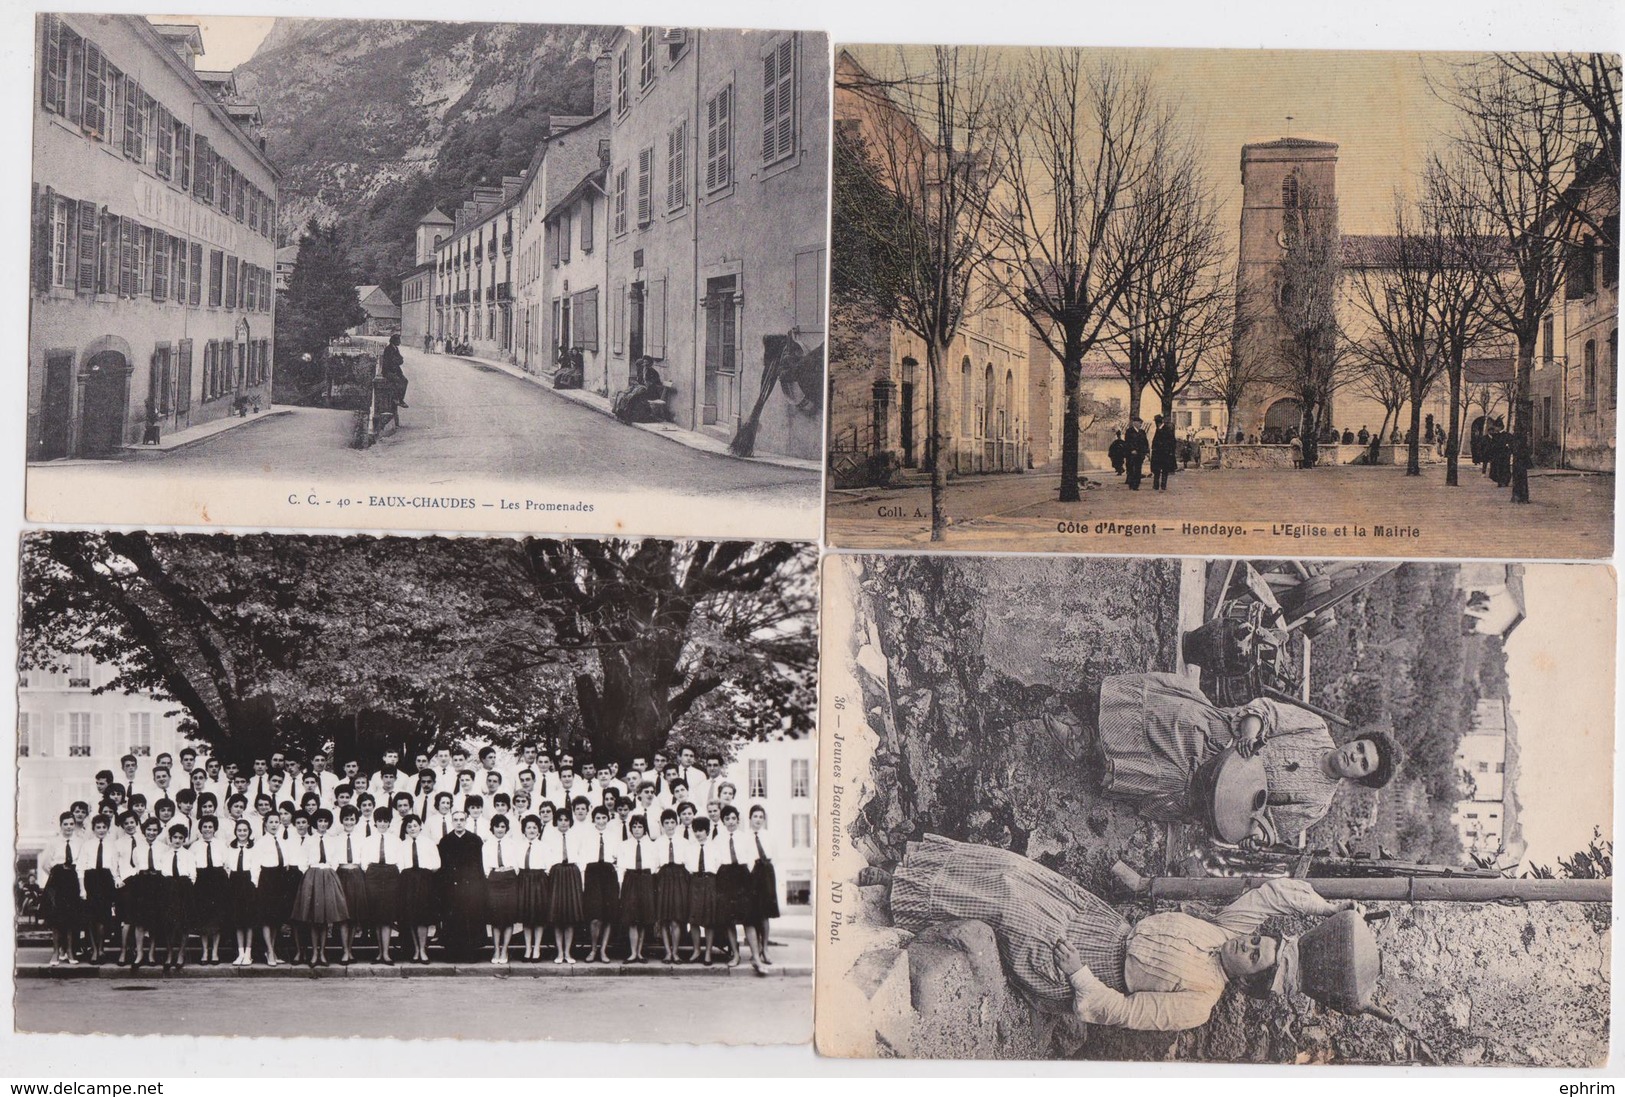 64 Pyrénées-Atlantiques - Lot de 151 cartes postales anciennes petit format